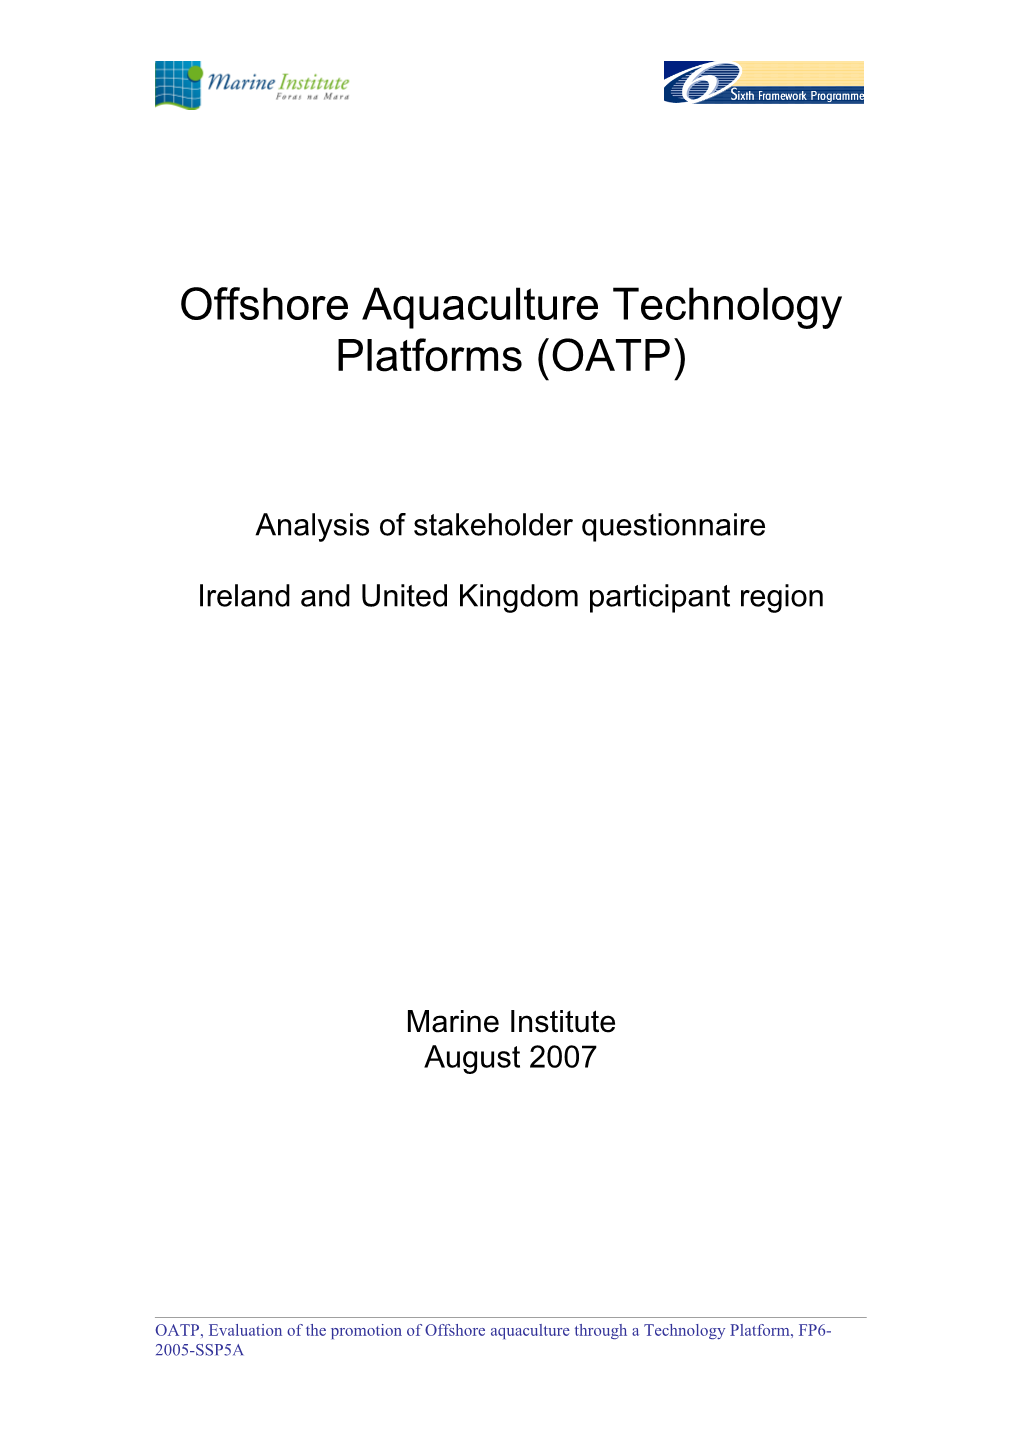 Offshore Aquaculture Technology Platforms (OATP)